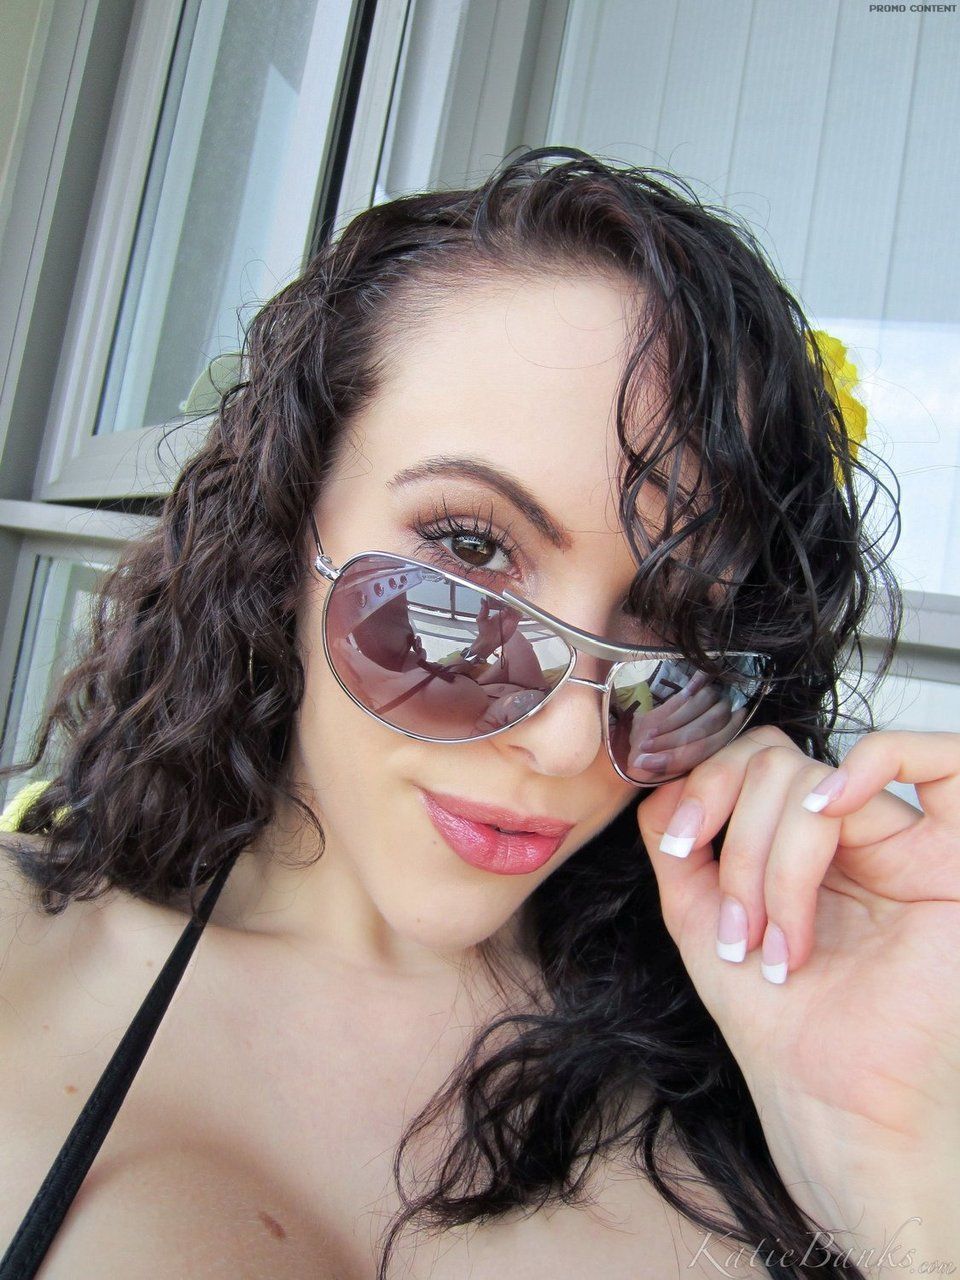 escuro cabelos Amador Katie Bancos Permite ela hooters solto a partir de biquini para selfies